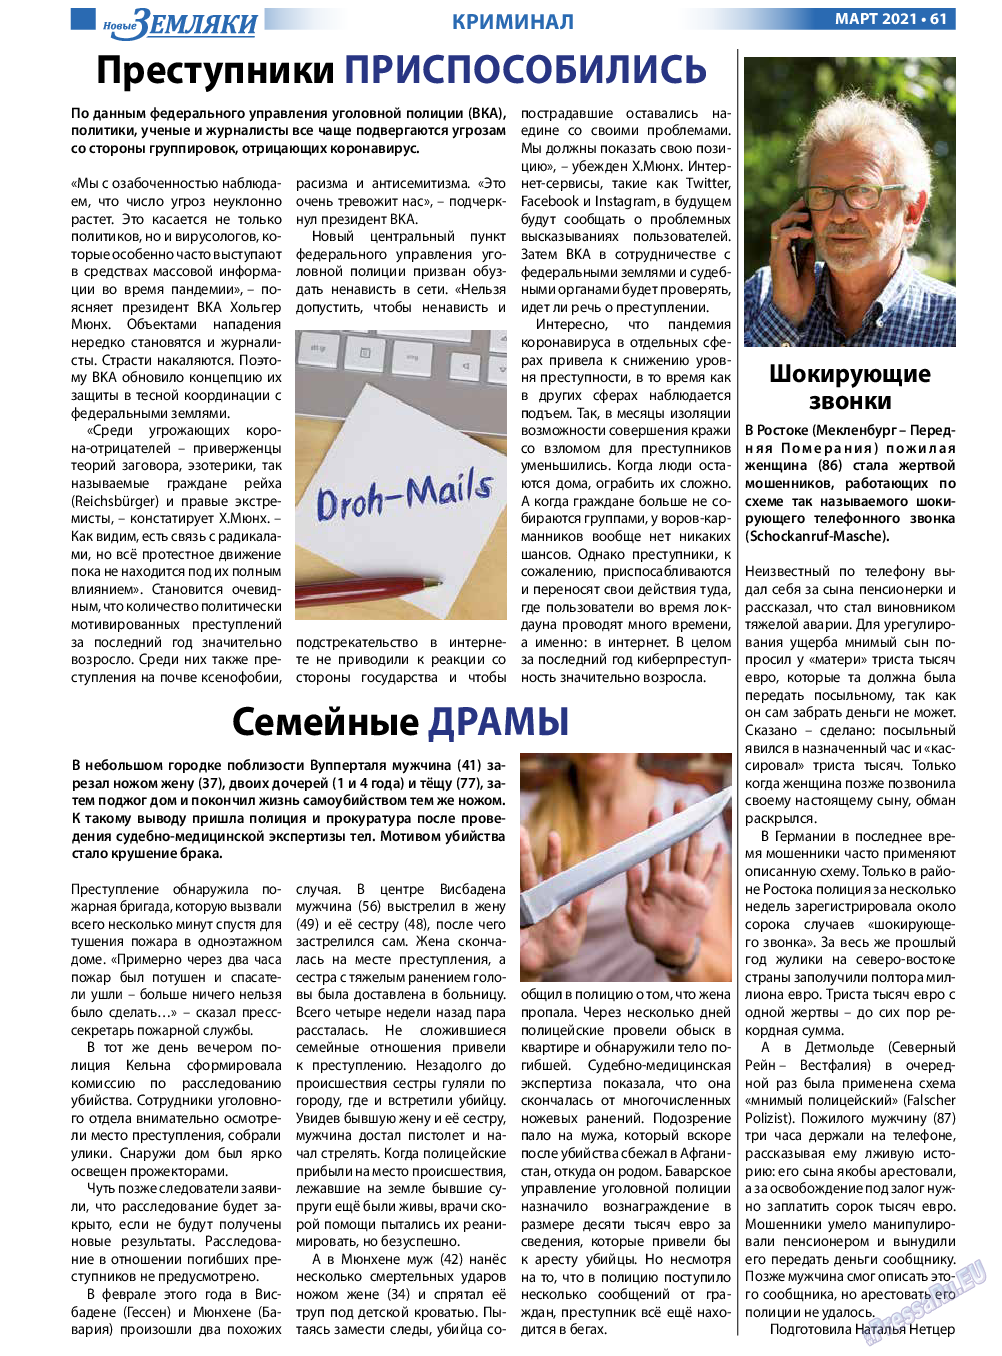 Новые Земляки, газета. 2021 №3 стр.61